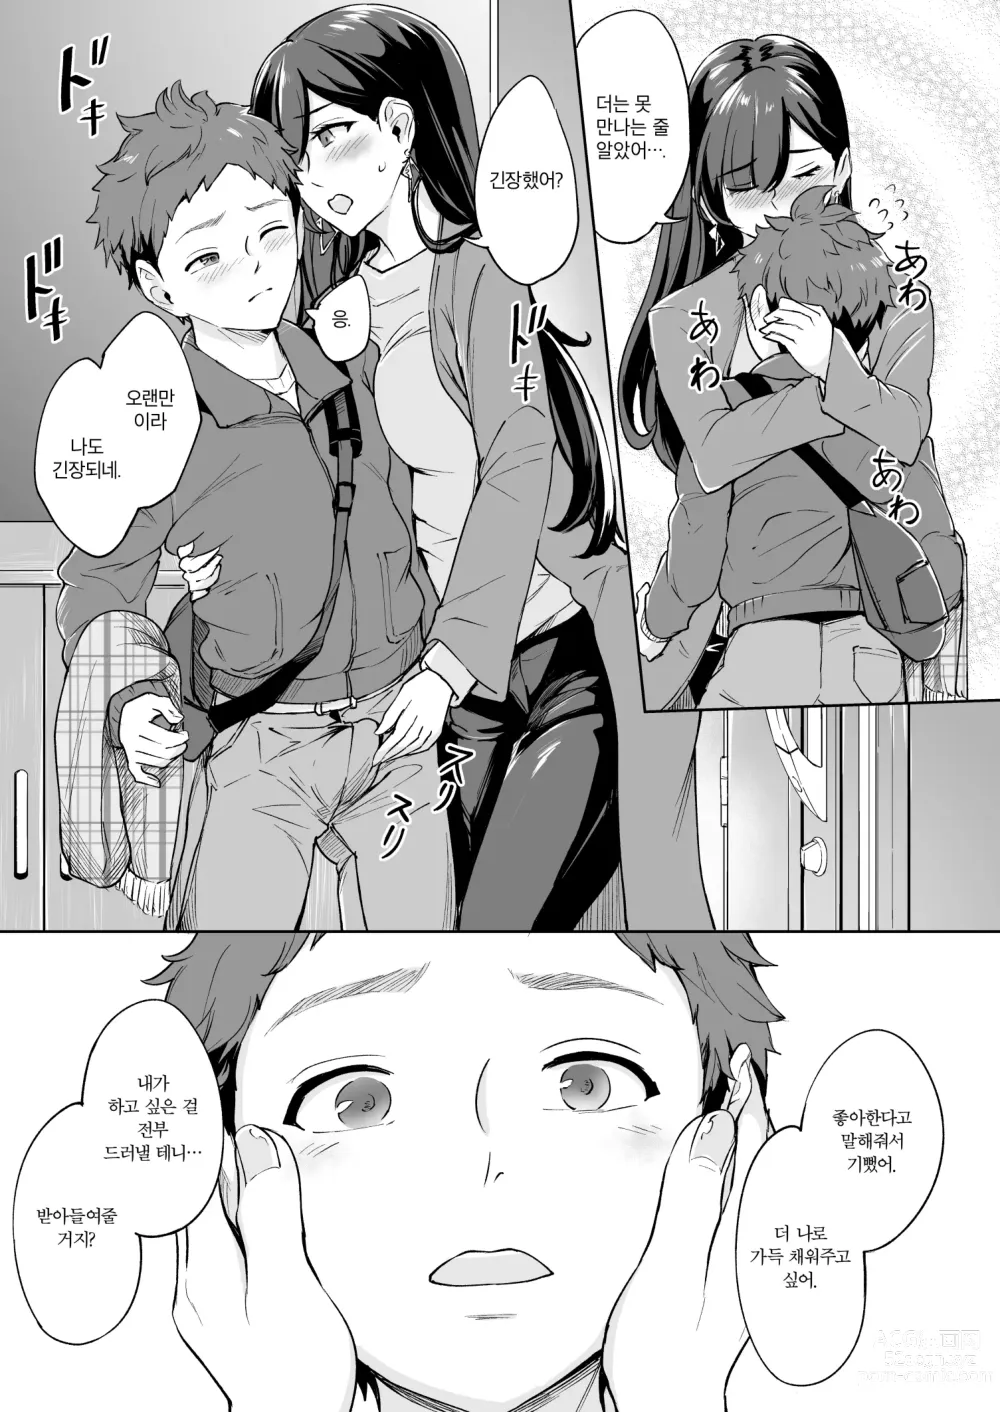 Page 6 of doujinshi 나타난 치녀는 연하킬러인 스카토로 변태였습니다 3